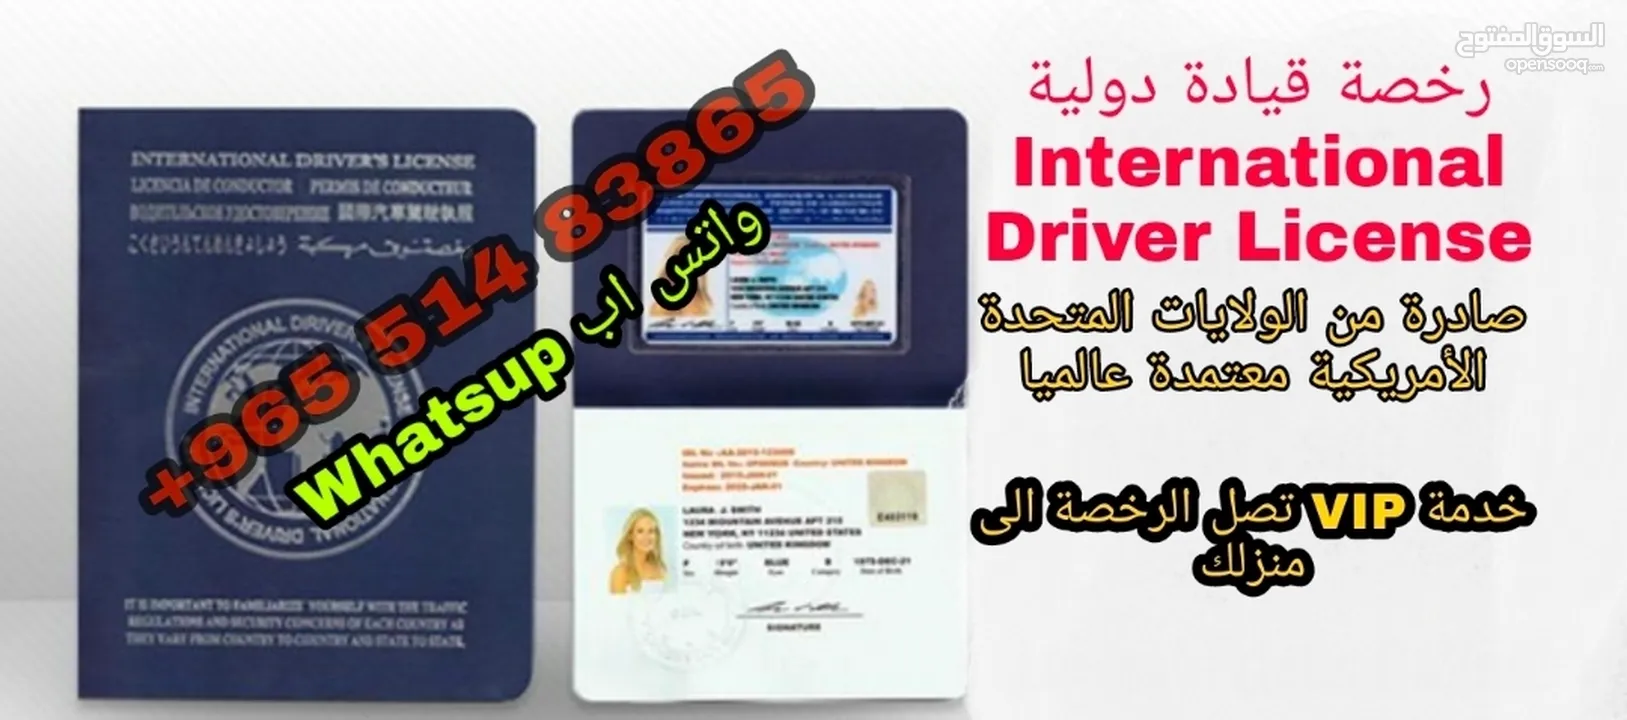 رخصة قيادة دولية ( ليسن دولي )